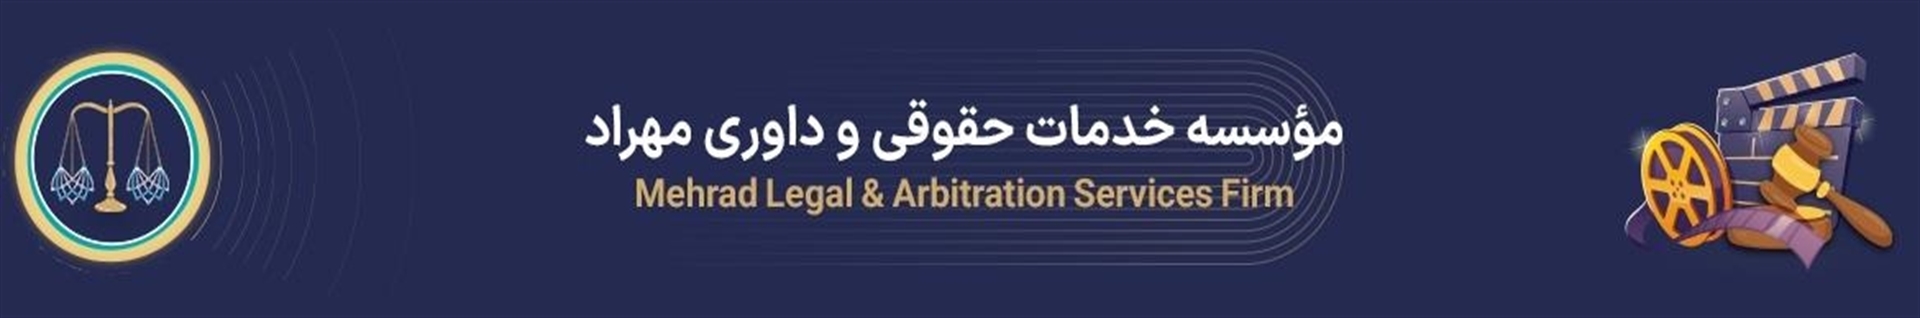 موسسه خدمات حقوقی و داوری مهراد